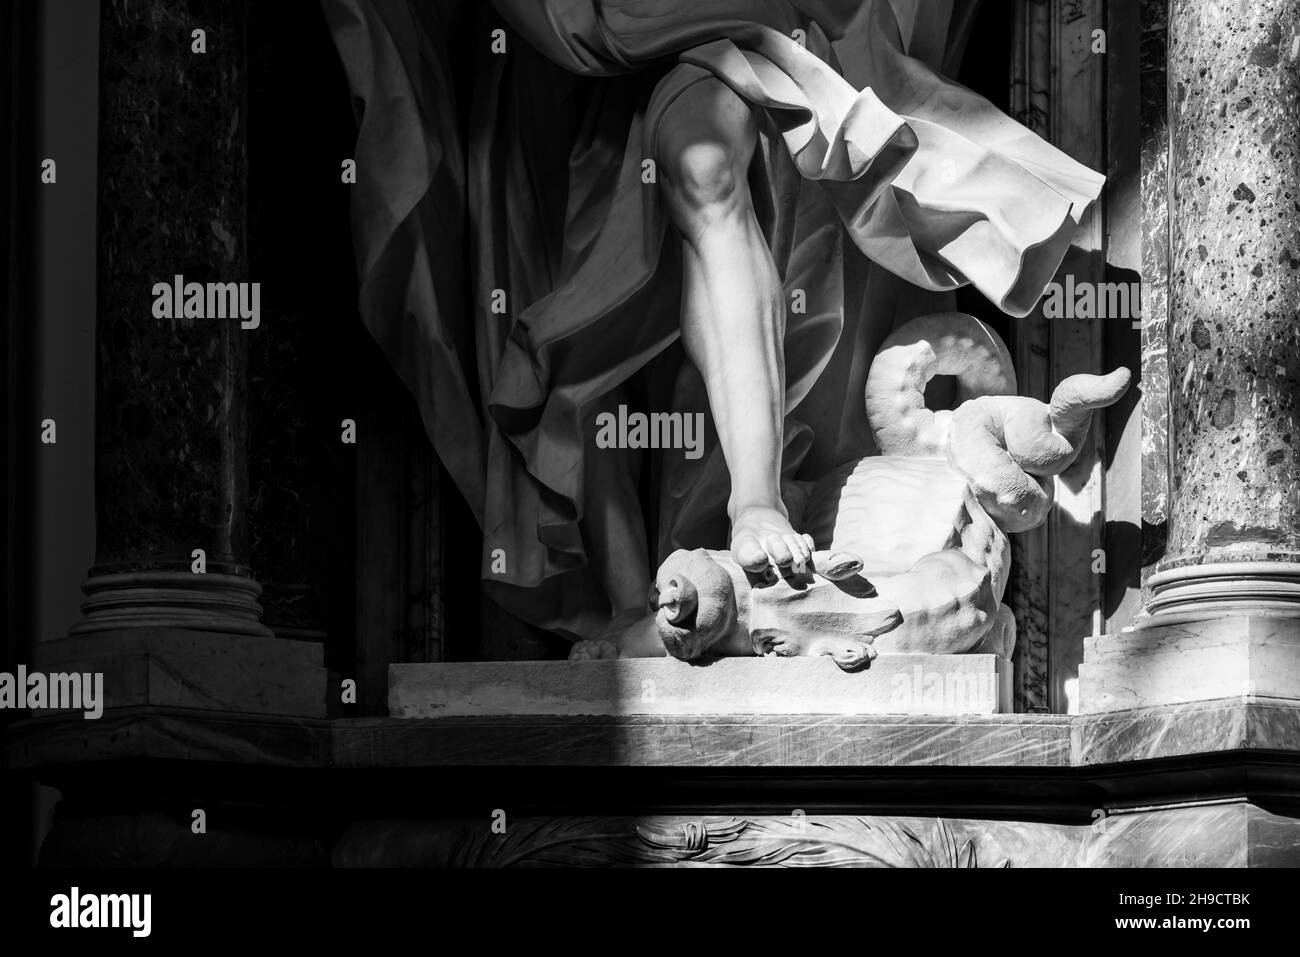 Foto in bianco e nero che mostra in dettaglio statue di marmo raffiguranti un piede maschio che strapa la testa di una bestia mitologica Foto Stock